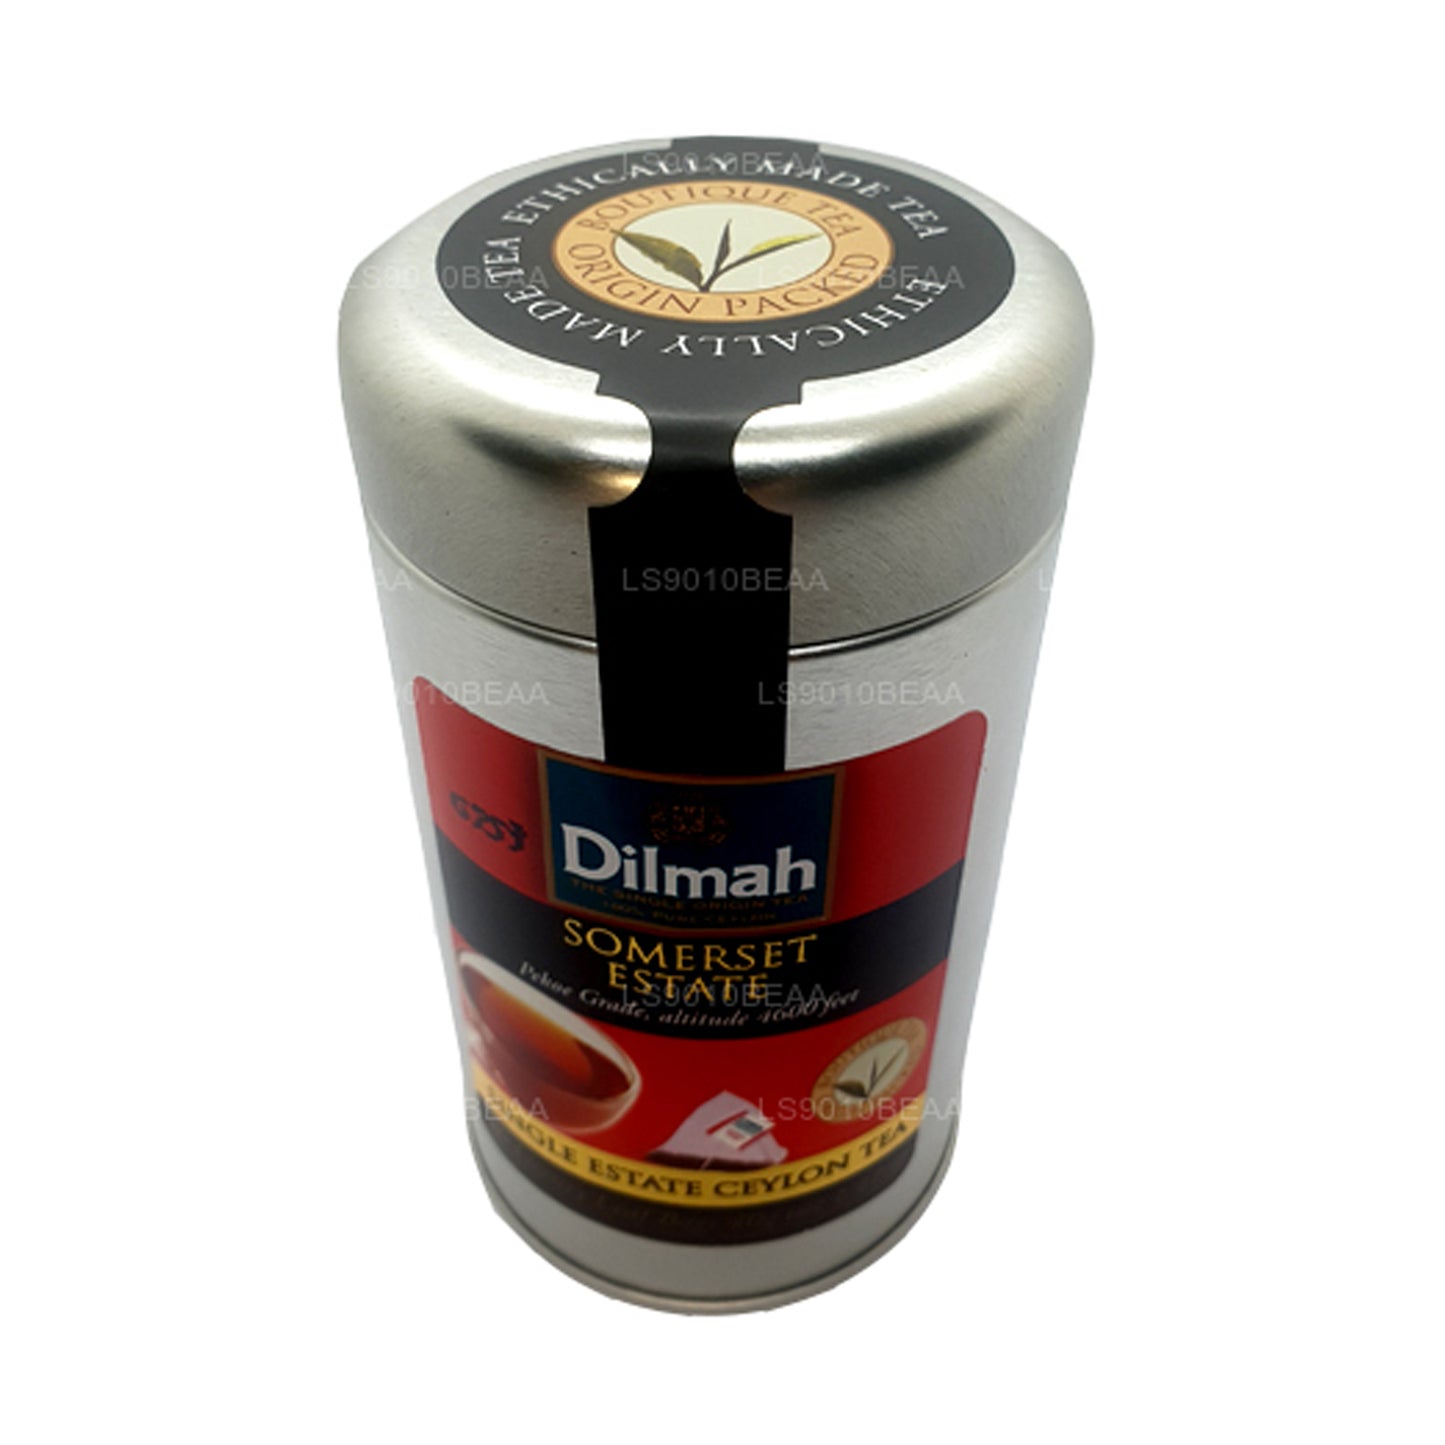 Dilmah Somerset 单一庄园茶罐 (40g)